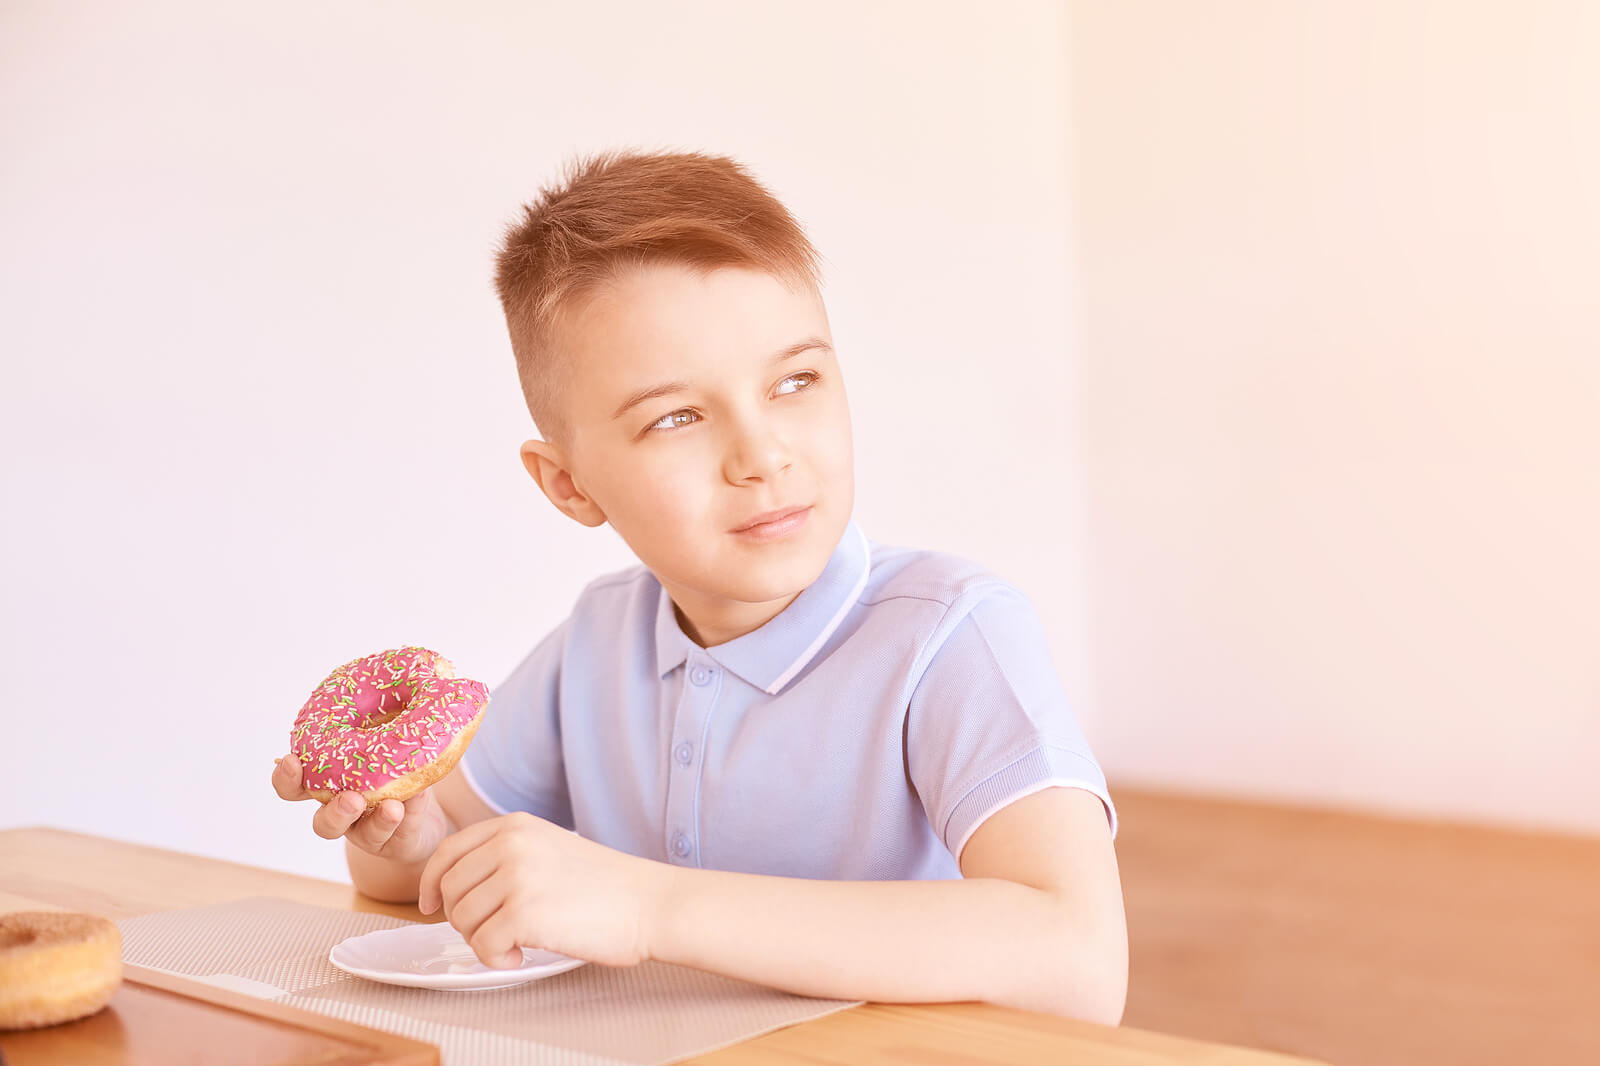 Kinder mit Neurodermitis - Junge isst einen Donut